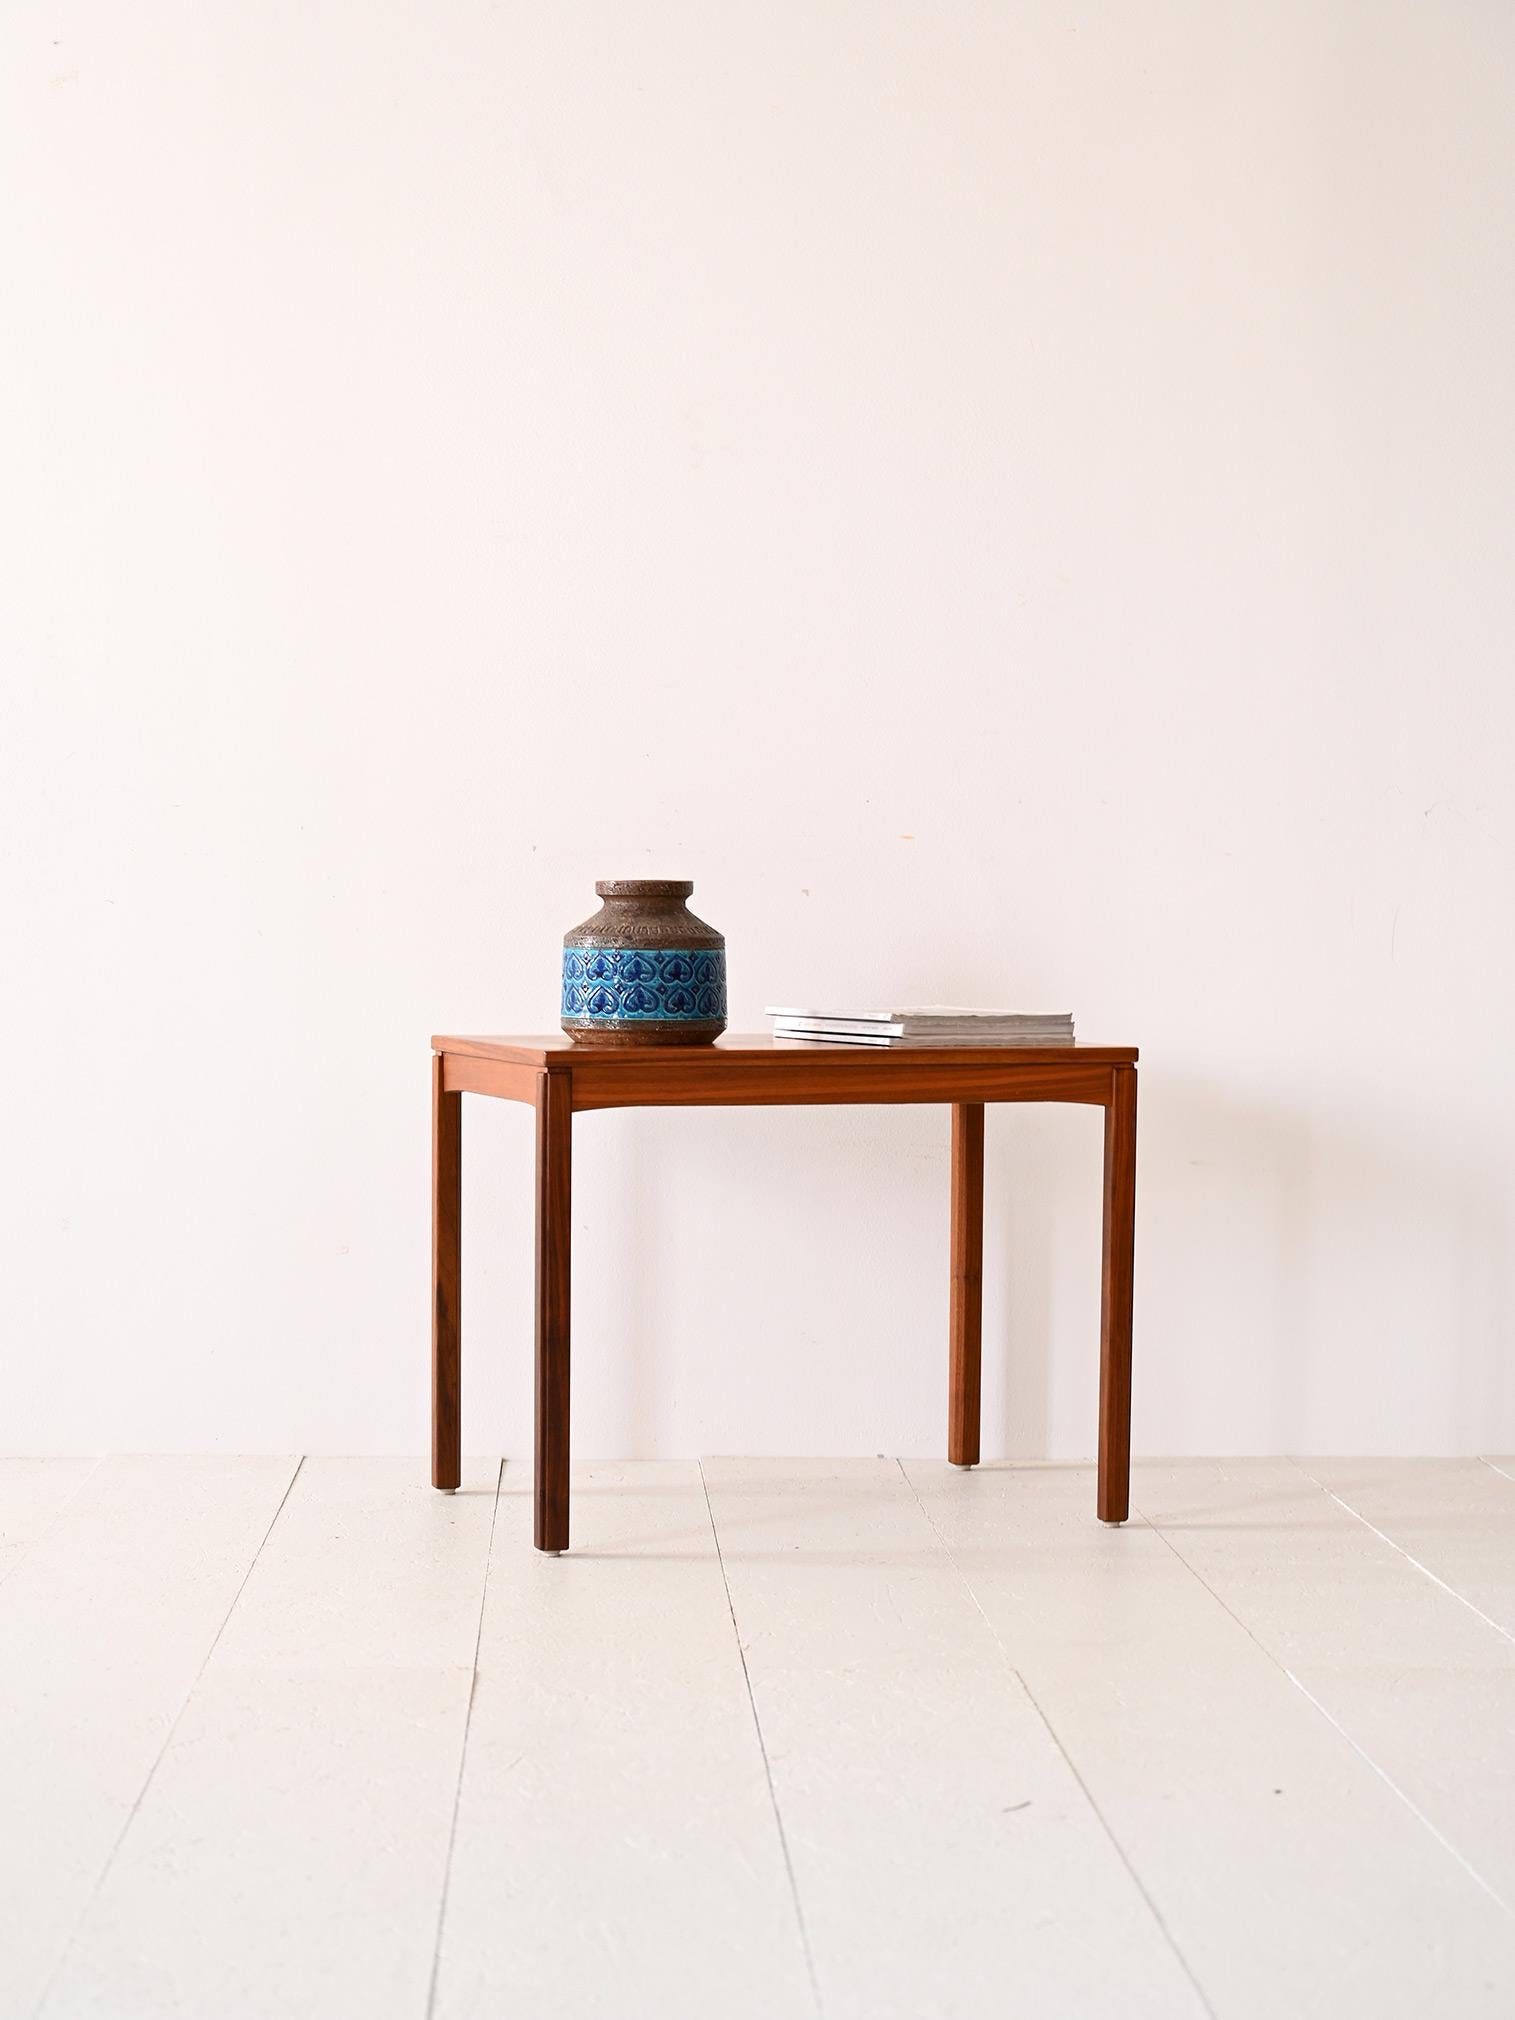 Originaler Vintage-Tisch aus den 1960er Jahren,

Quadratische, regelmäßige Linien zeichnen diesen nordischen Couchtisch aus der Mitte des Jahrhunderts aus. Das wesentliche Teakholzgestell besteht aus einer rechteckigen Tischplatte und langen